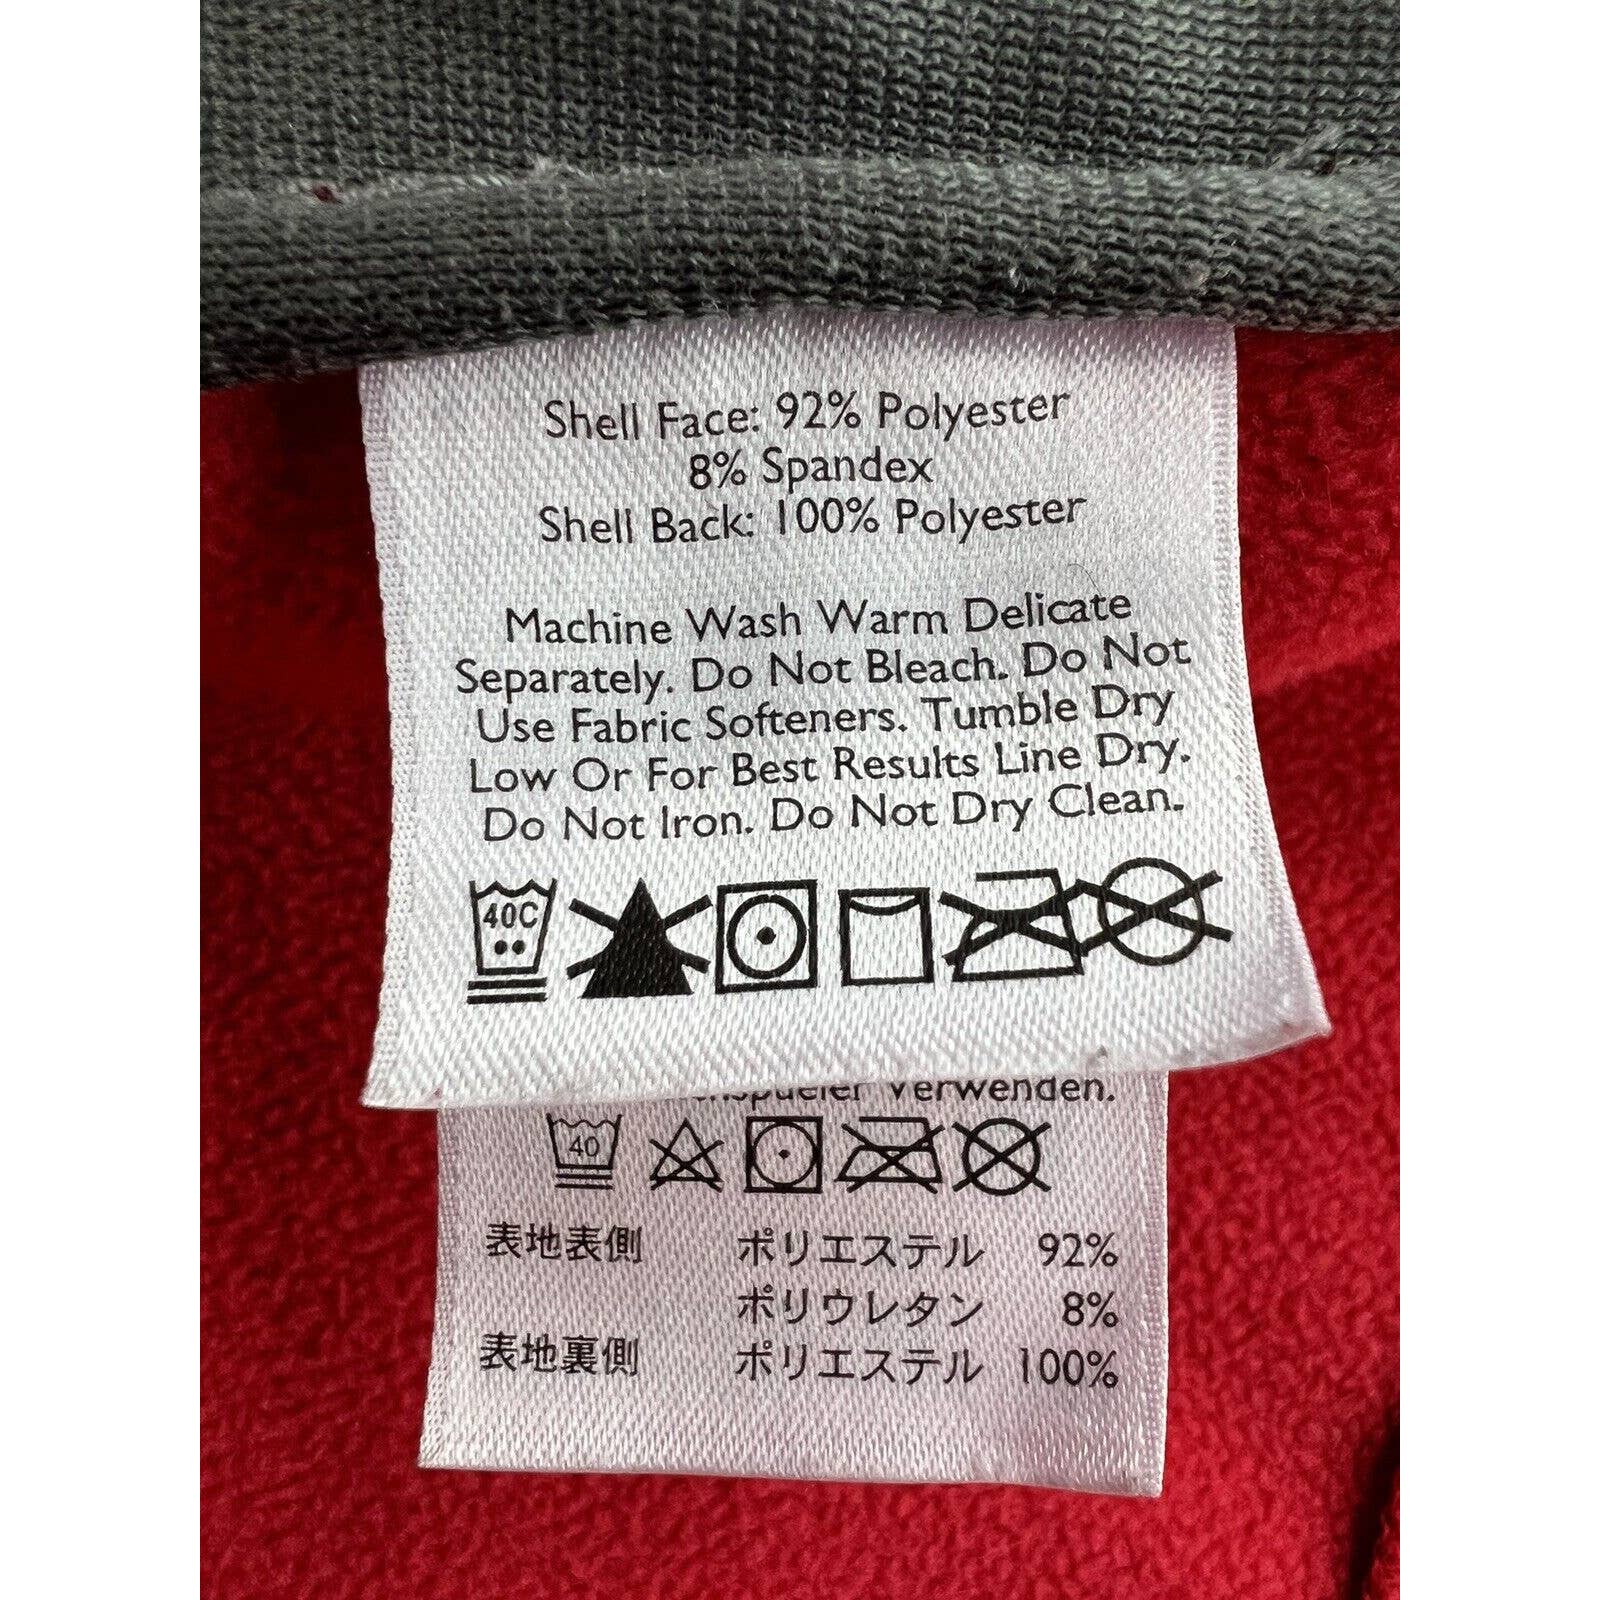 Eddie Bauer Soft Shell Jacket Women’s Small Red Black Fleece Lined Windbreaker